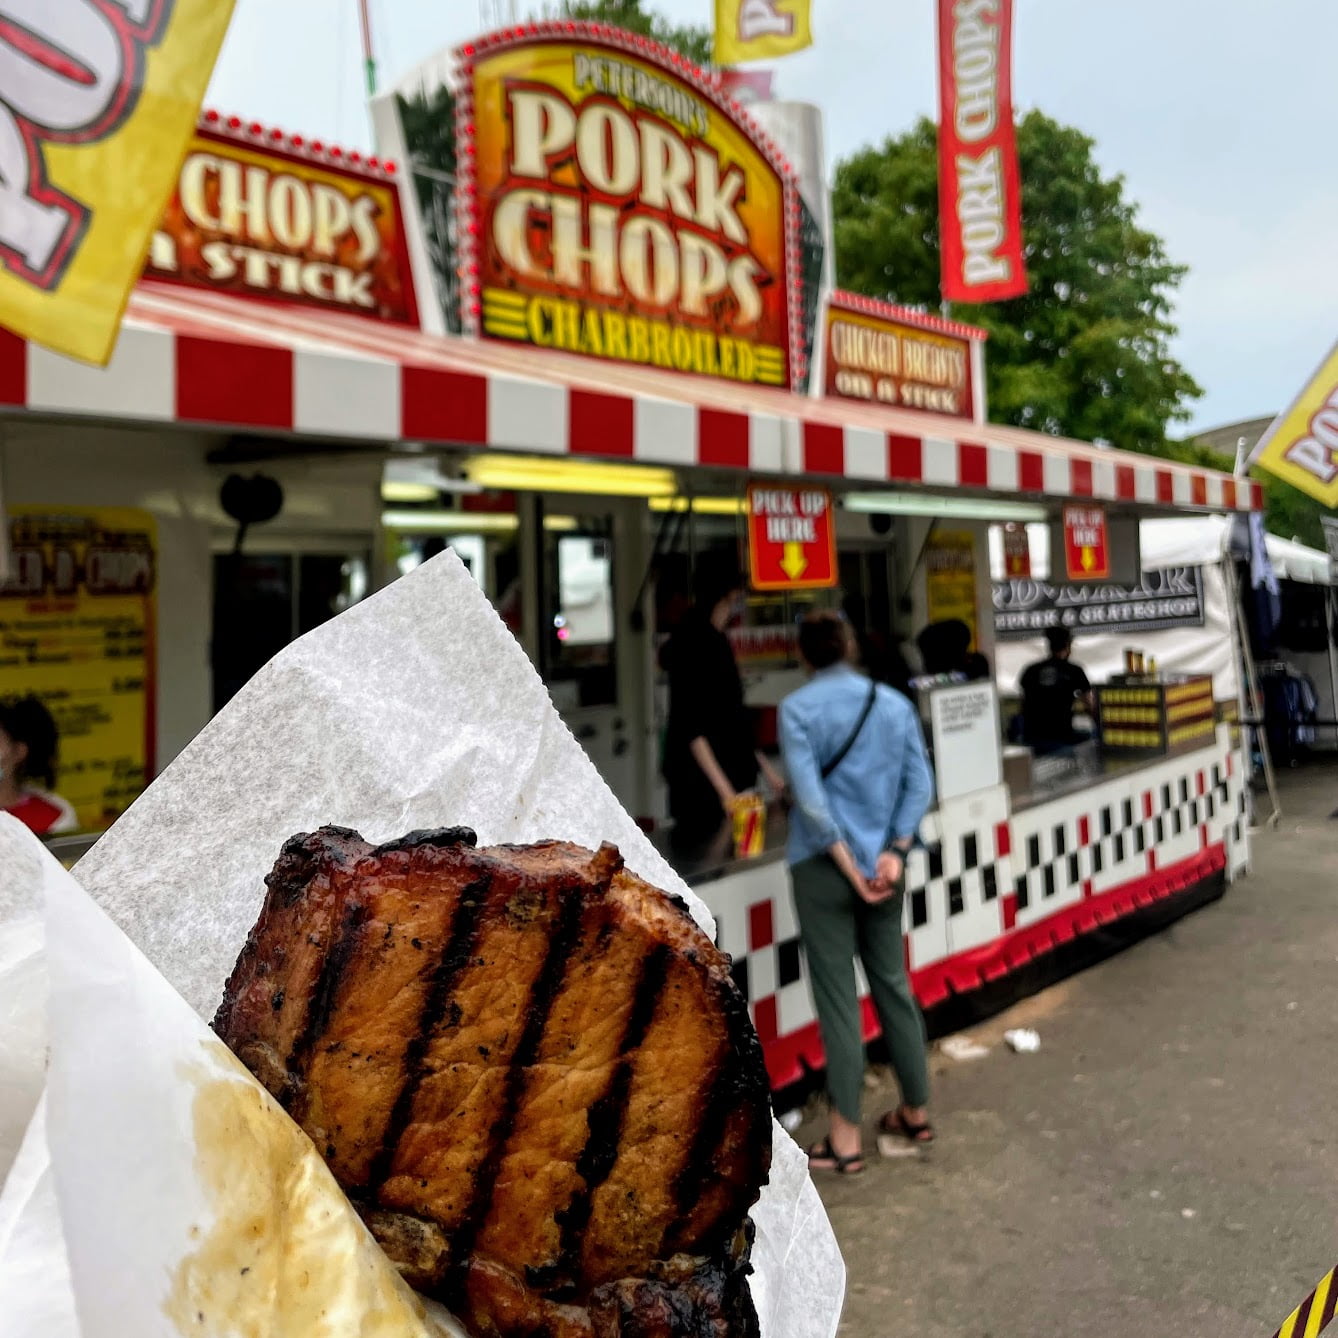 pork chop state fair Andrea abroad